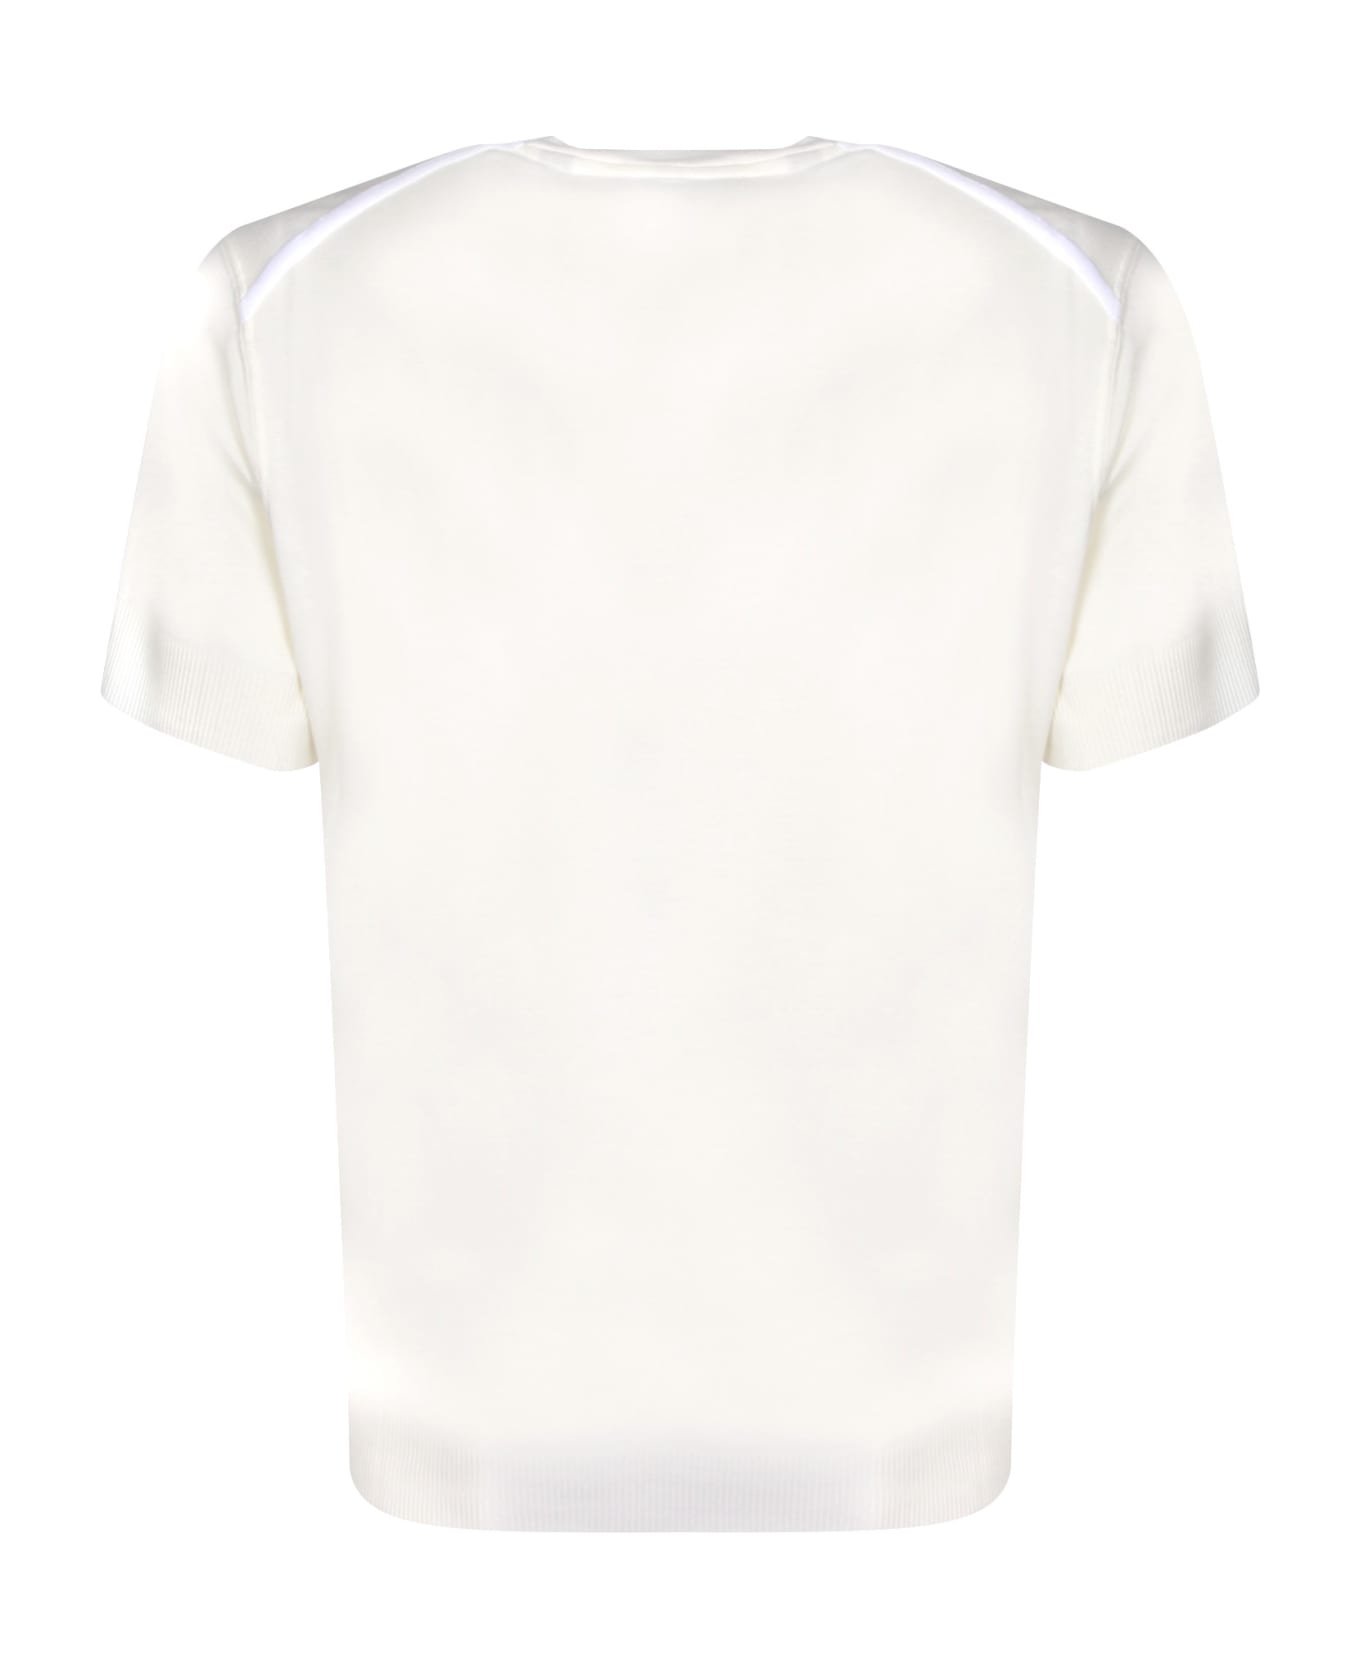 Tom Ford Ribber White T-shirt - White